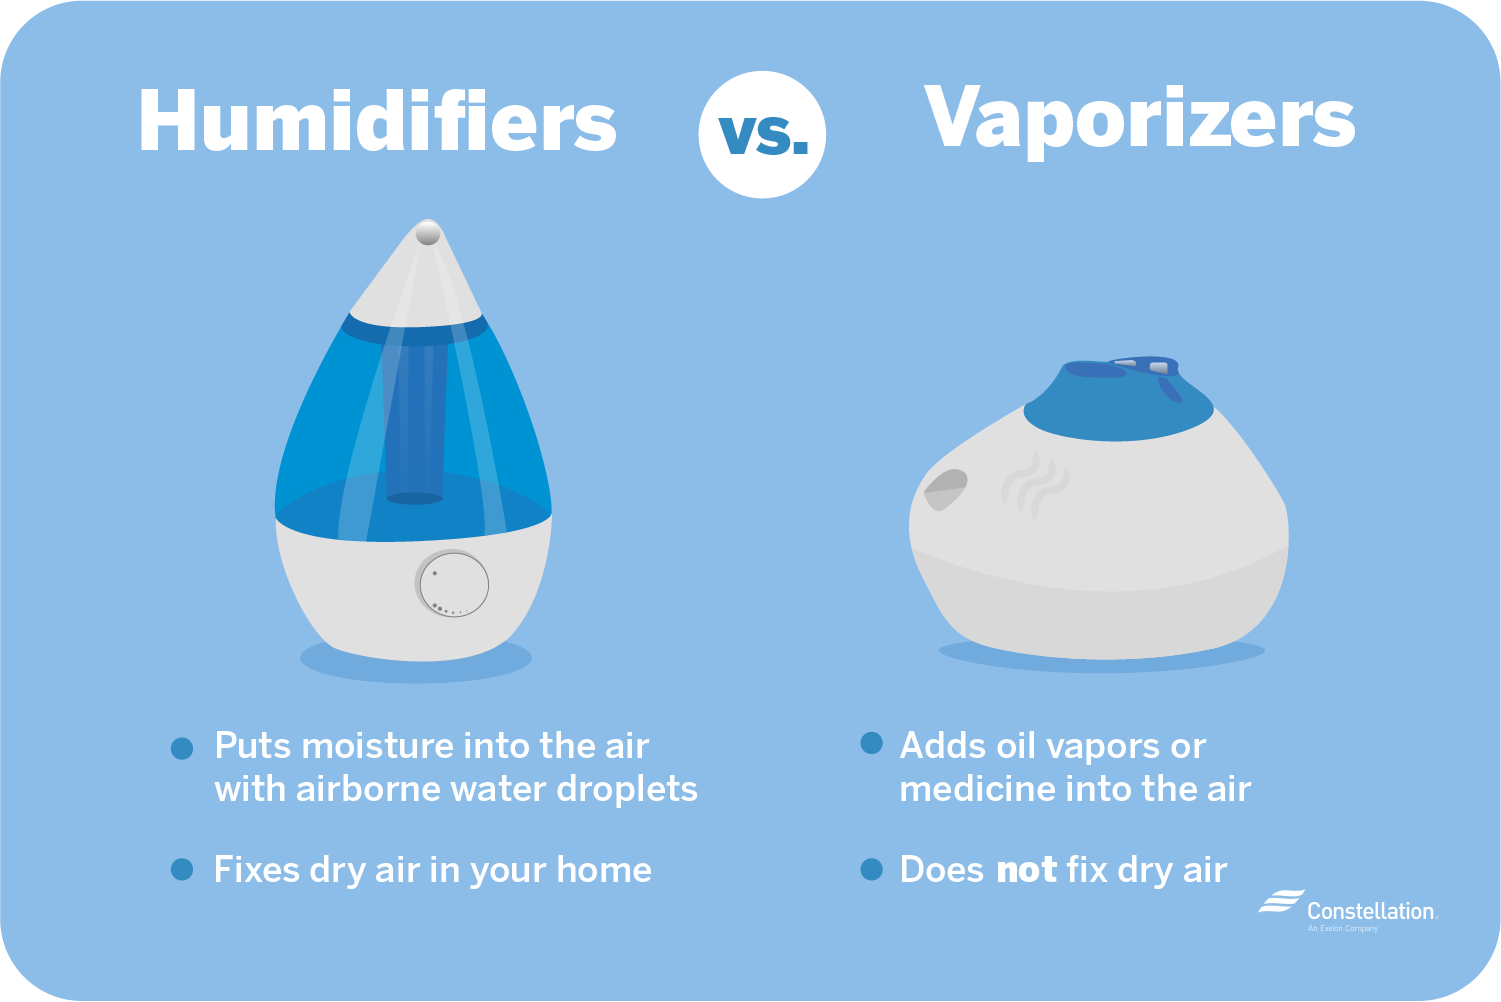 节能加湿器将水分放入空气中以固定干燥空气，而蒸发器将油或药物排放到空气中